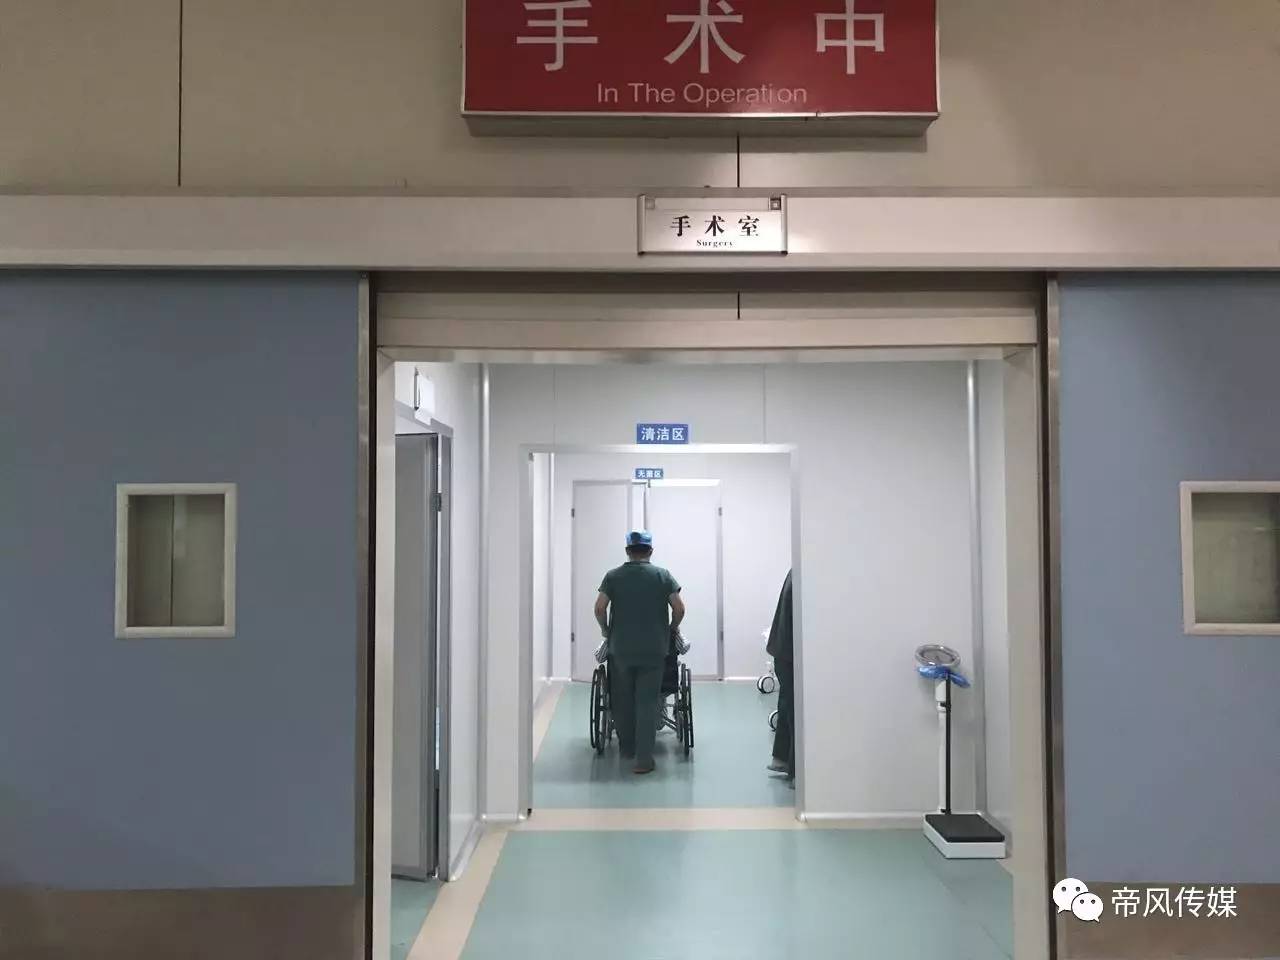 由于不能进入手术室,只能在门外等待.